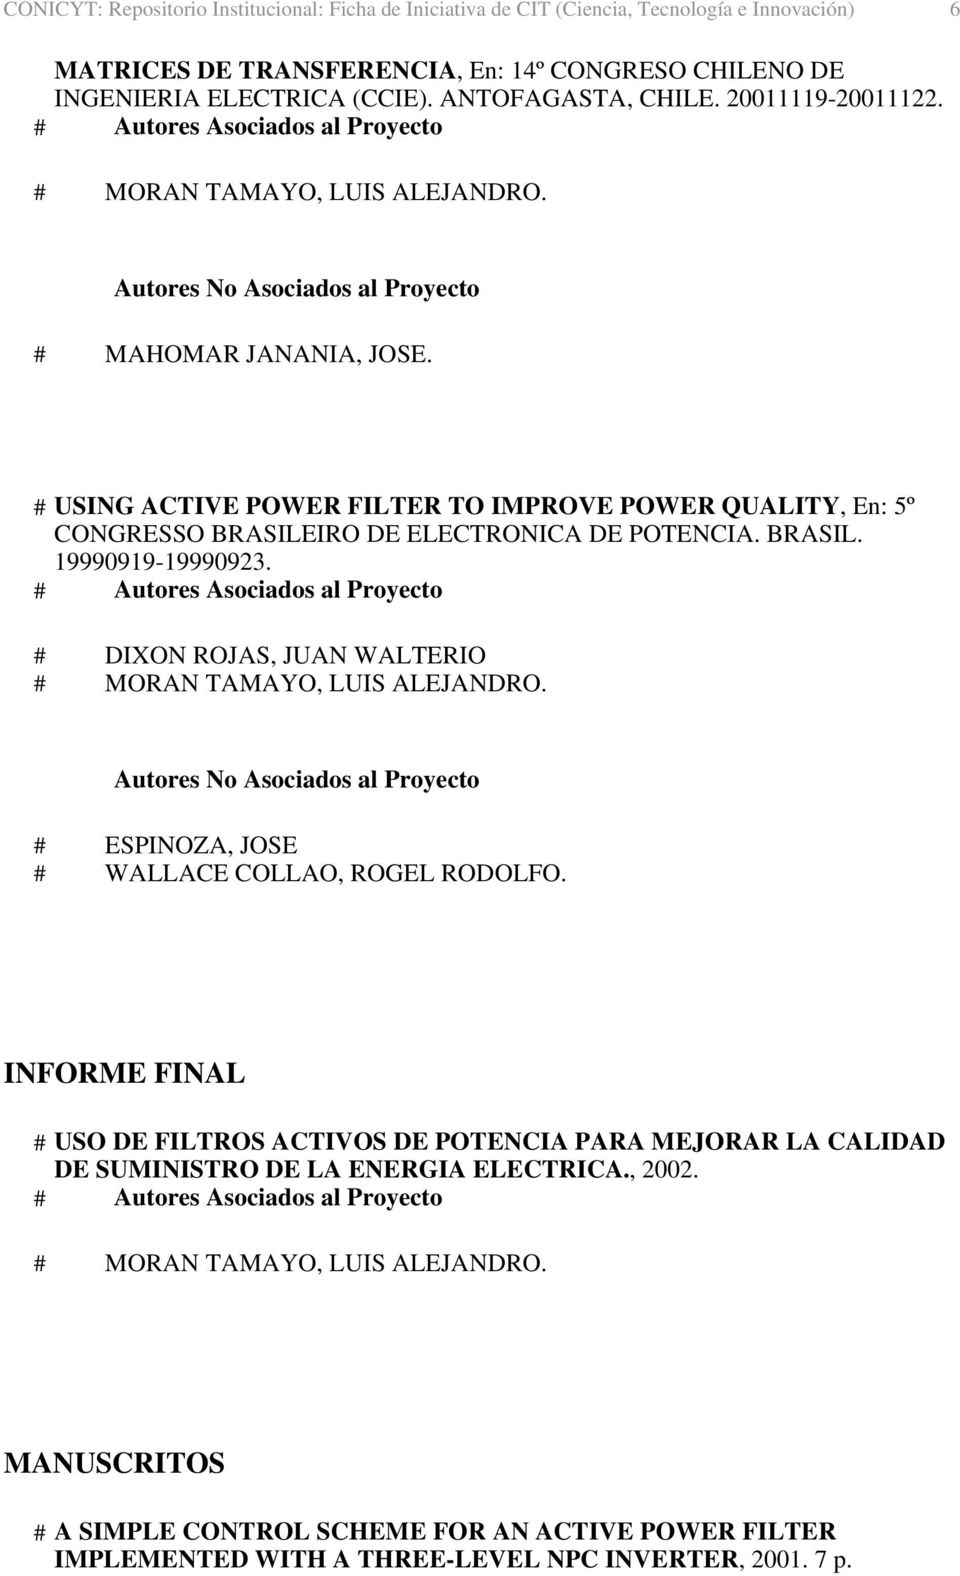 # USING ACTIVE POWER FILTER TO IMPROVE POWER QUALITY, En: 5º CONGRESSO BRASILEIRO DE ELECTRONICA DE POTENCIA. BRASIL. 19990919-19990923.